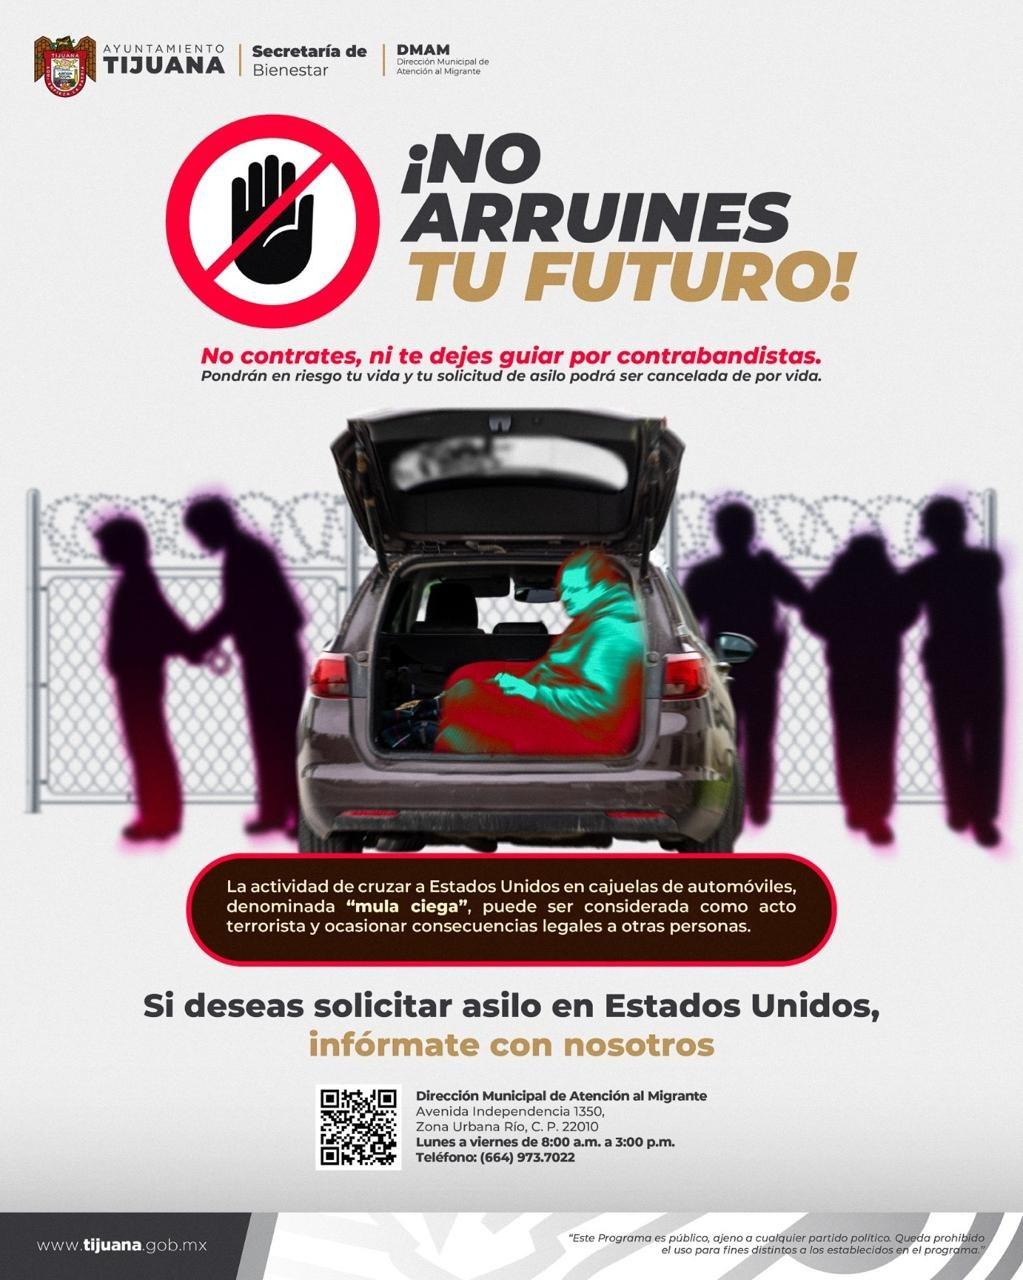 Lanza ayuntamiento campaña para inhibir cruce irregular de migrantes en modalidad “mula ciega”